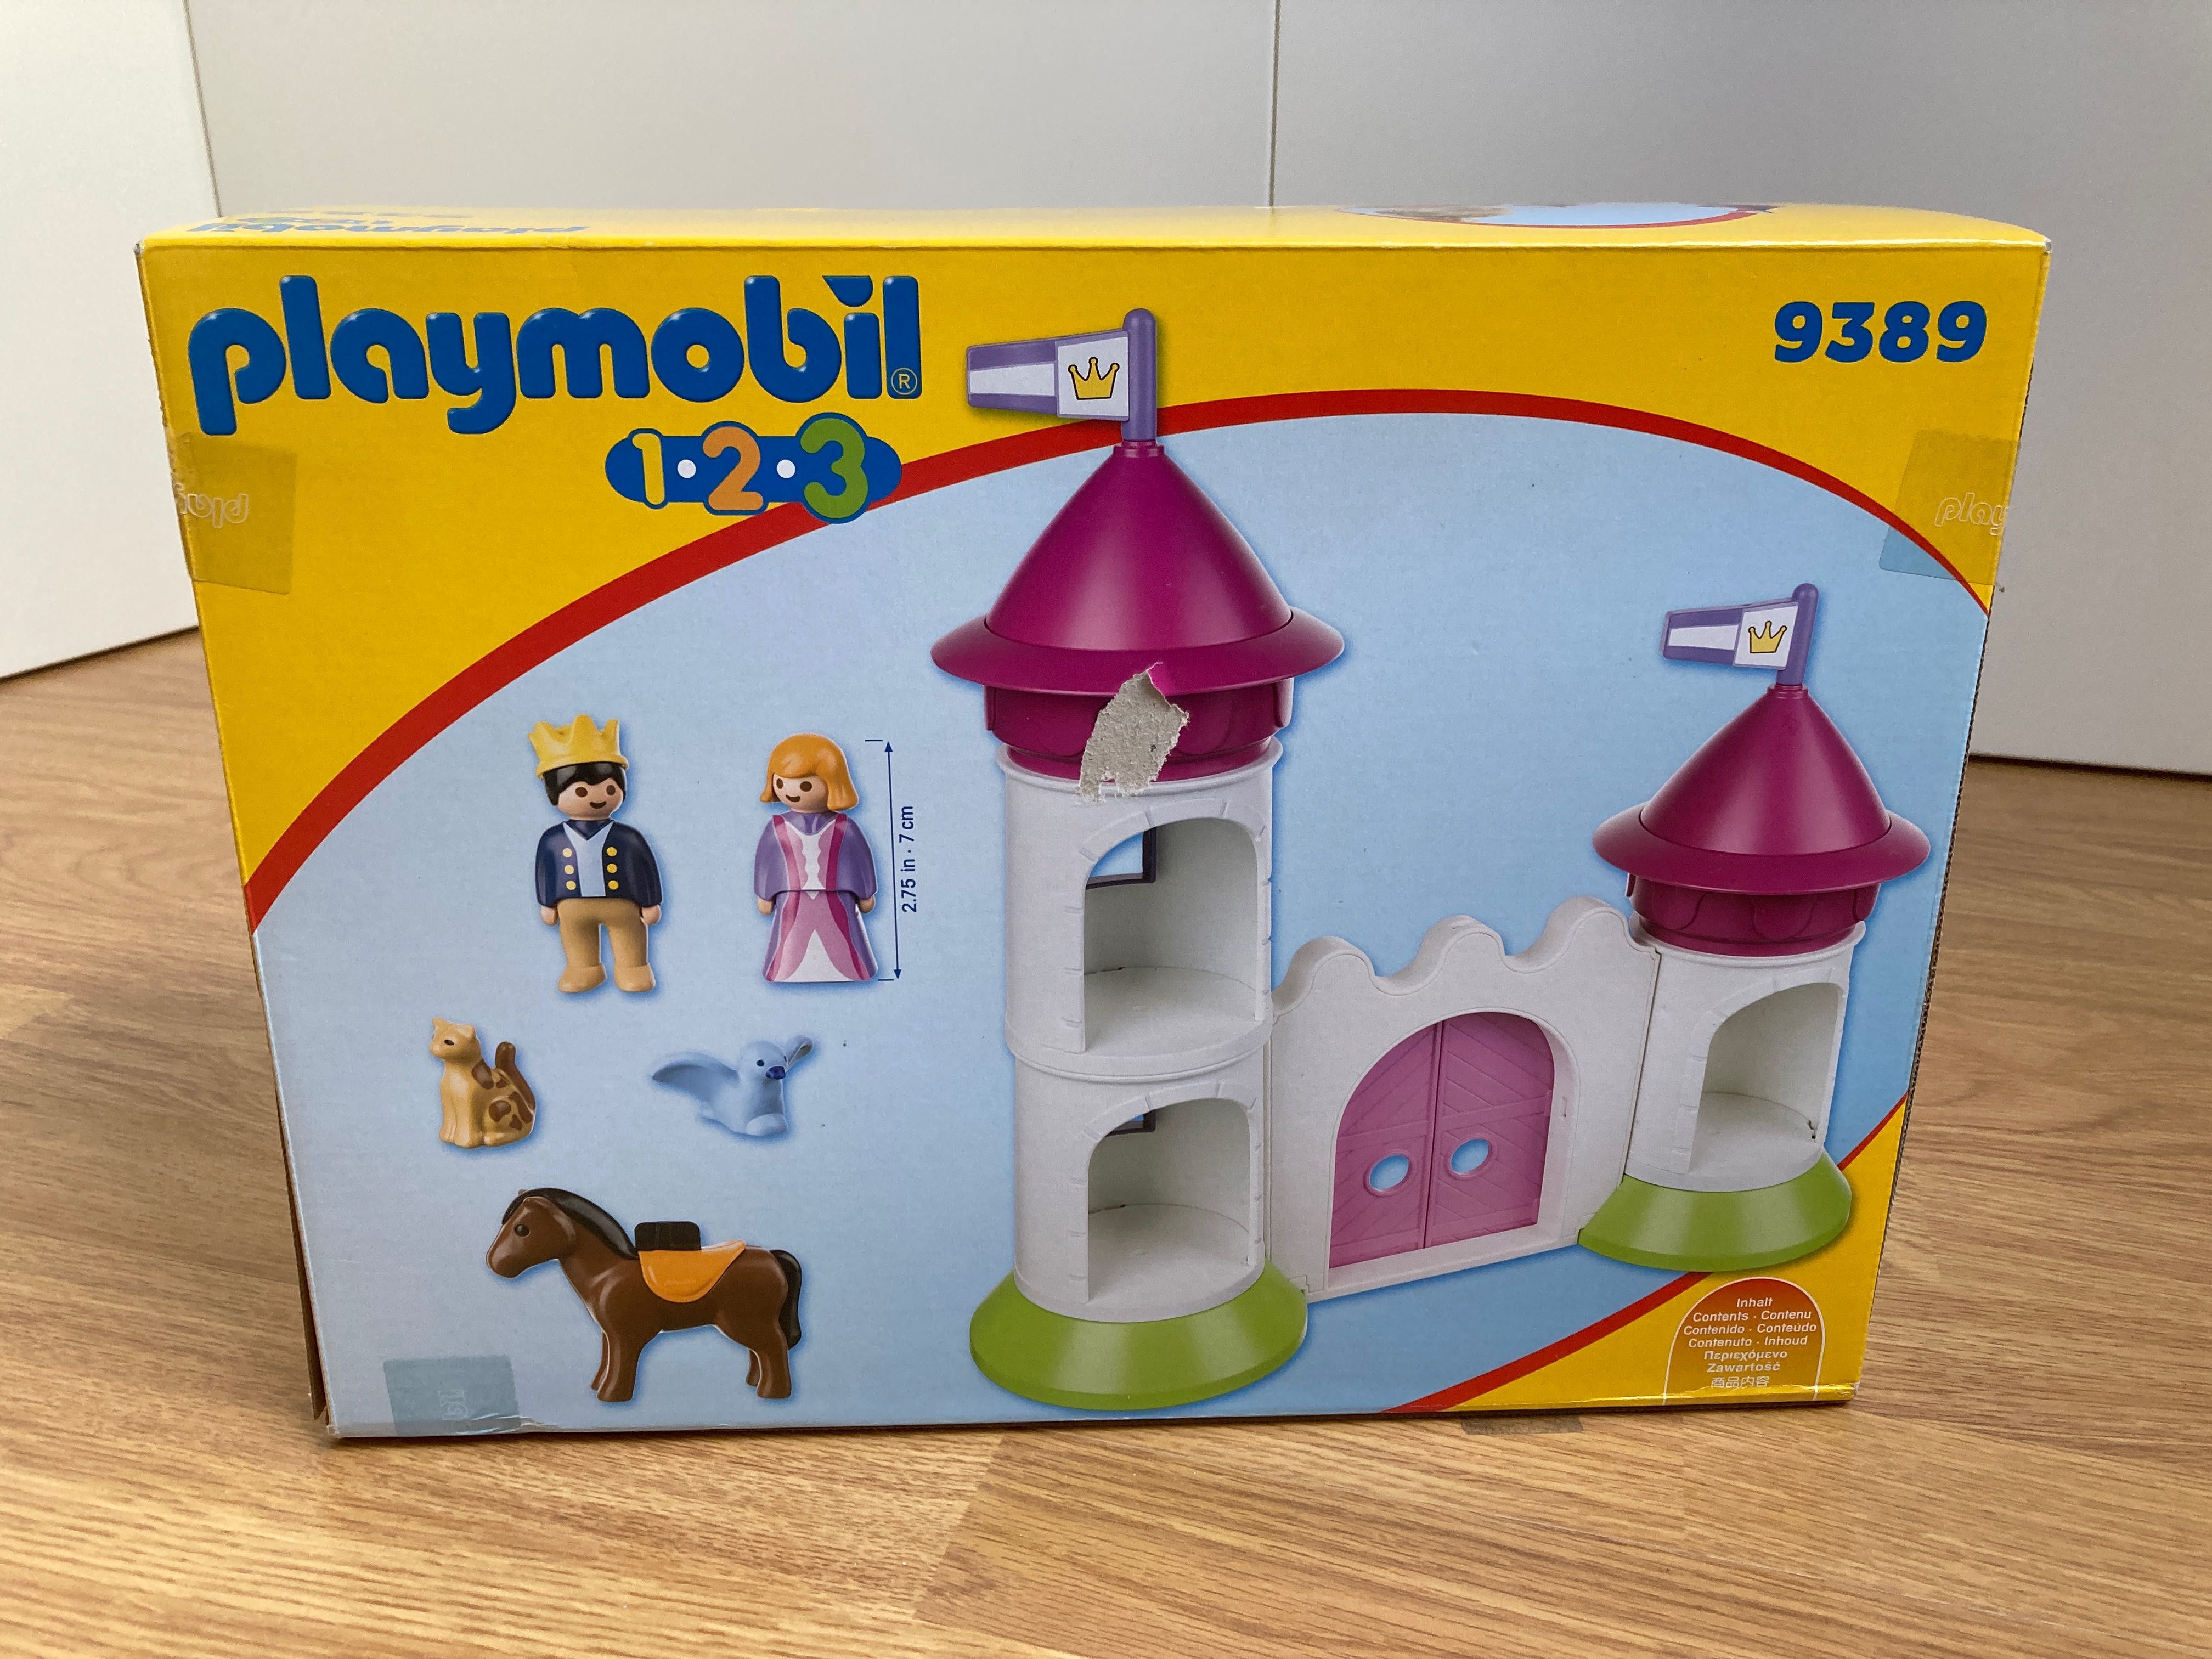 Playmobil 1 2 3 Castelo para montar (NOVO)